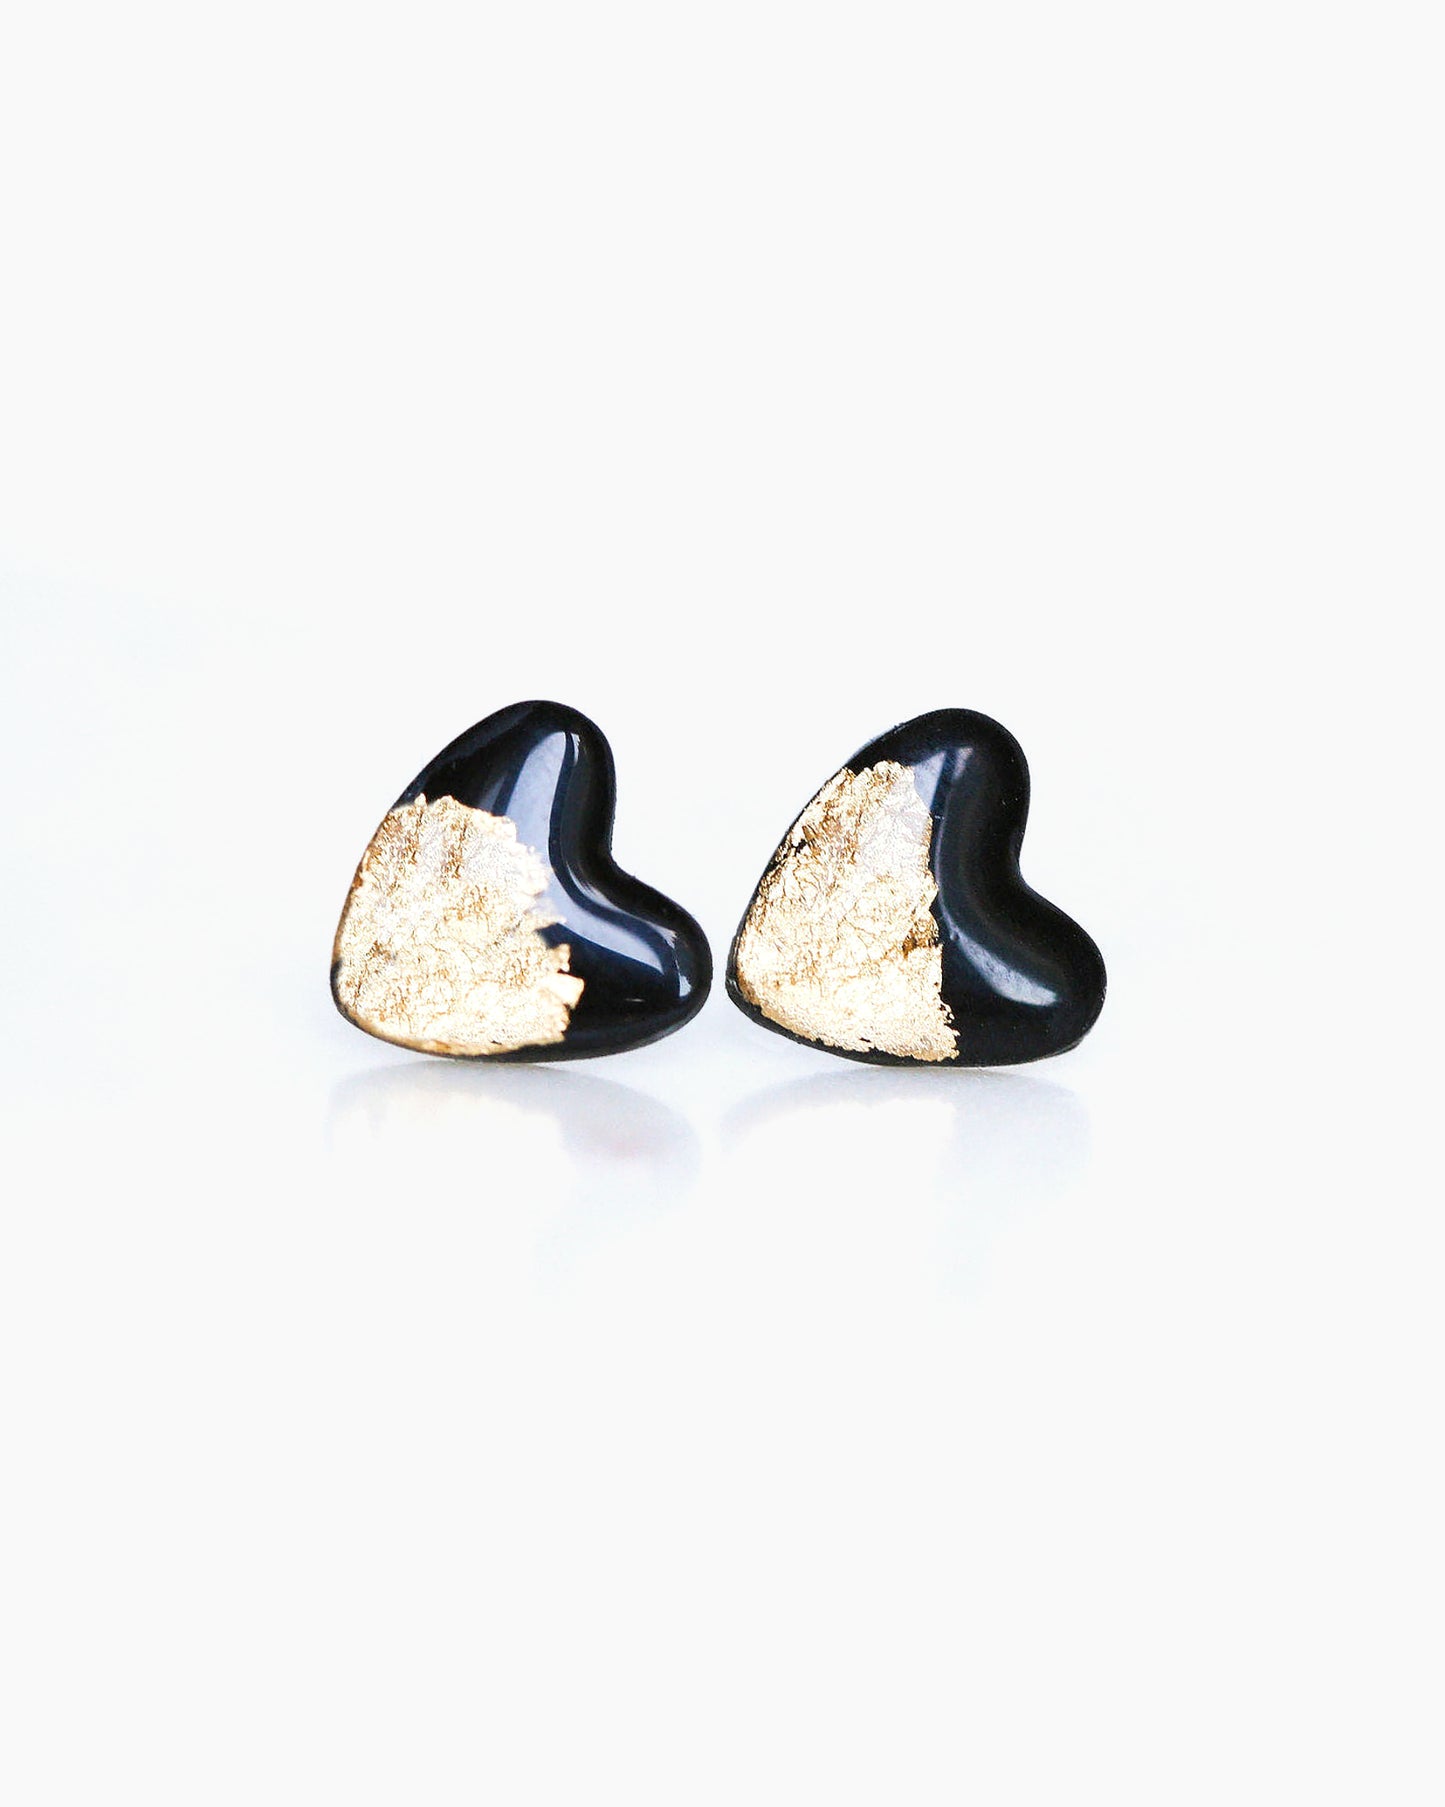 Black gold heart studs for sensitive ears